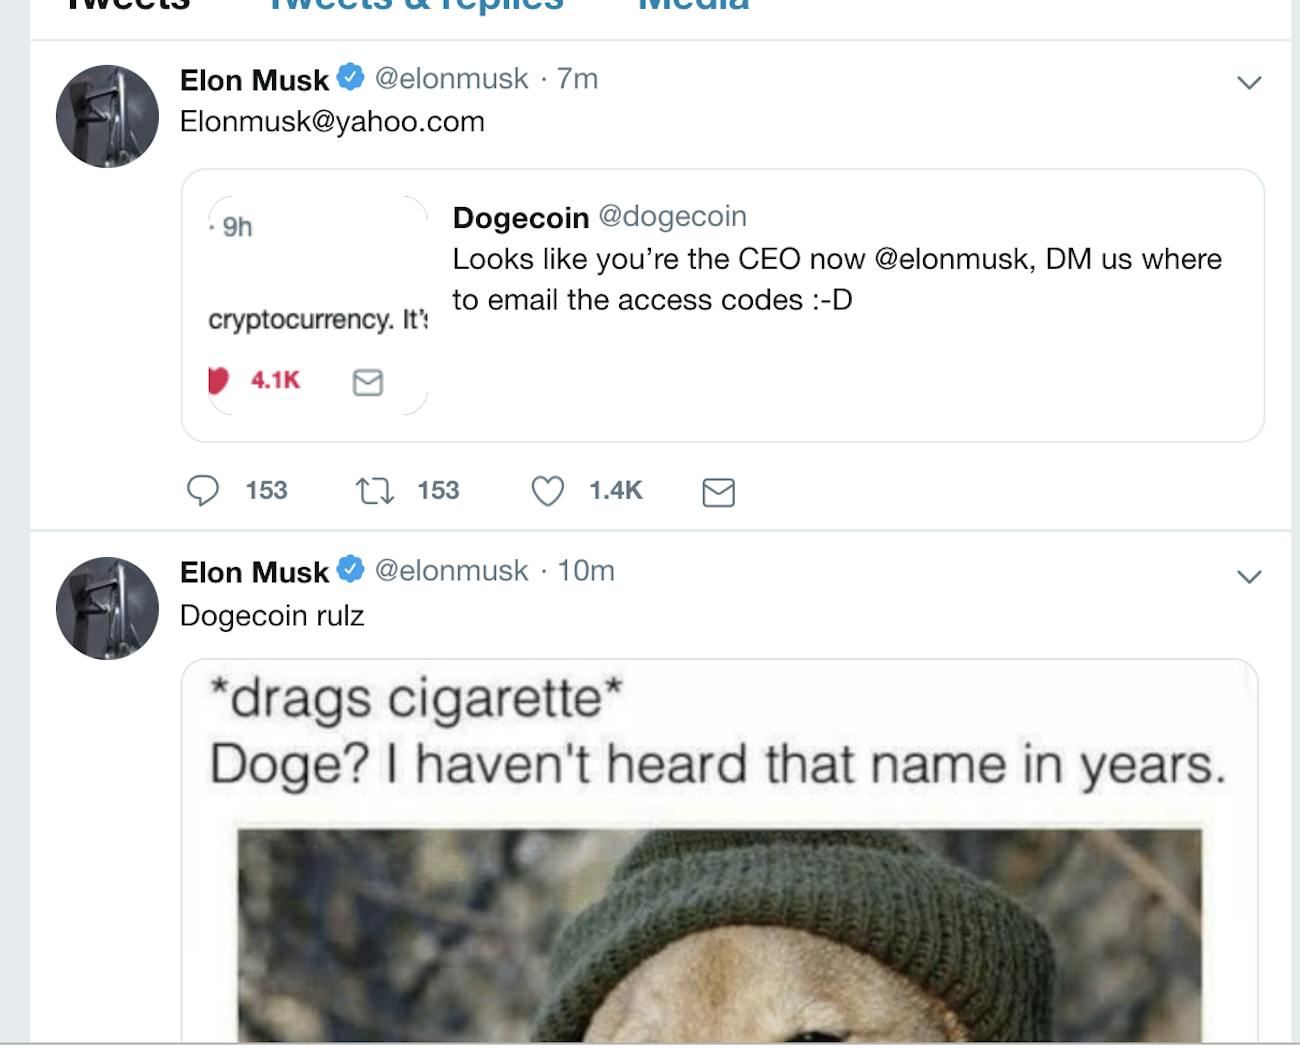 elon musk first tweet about dogecoin